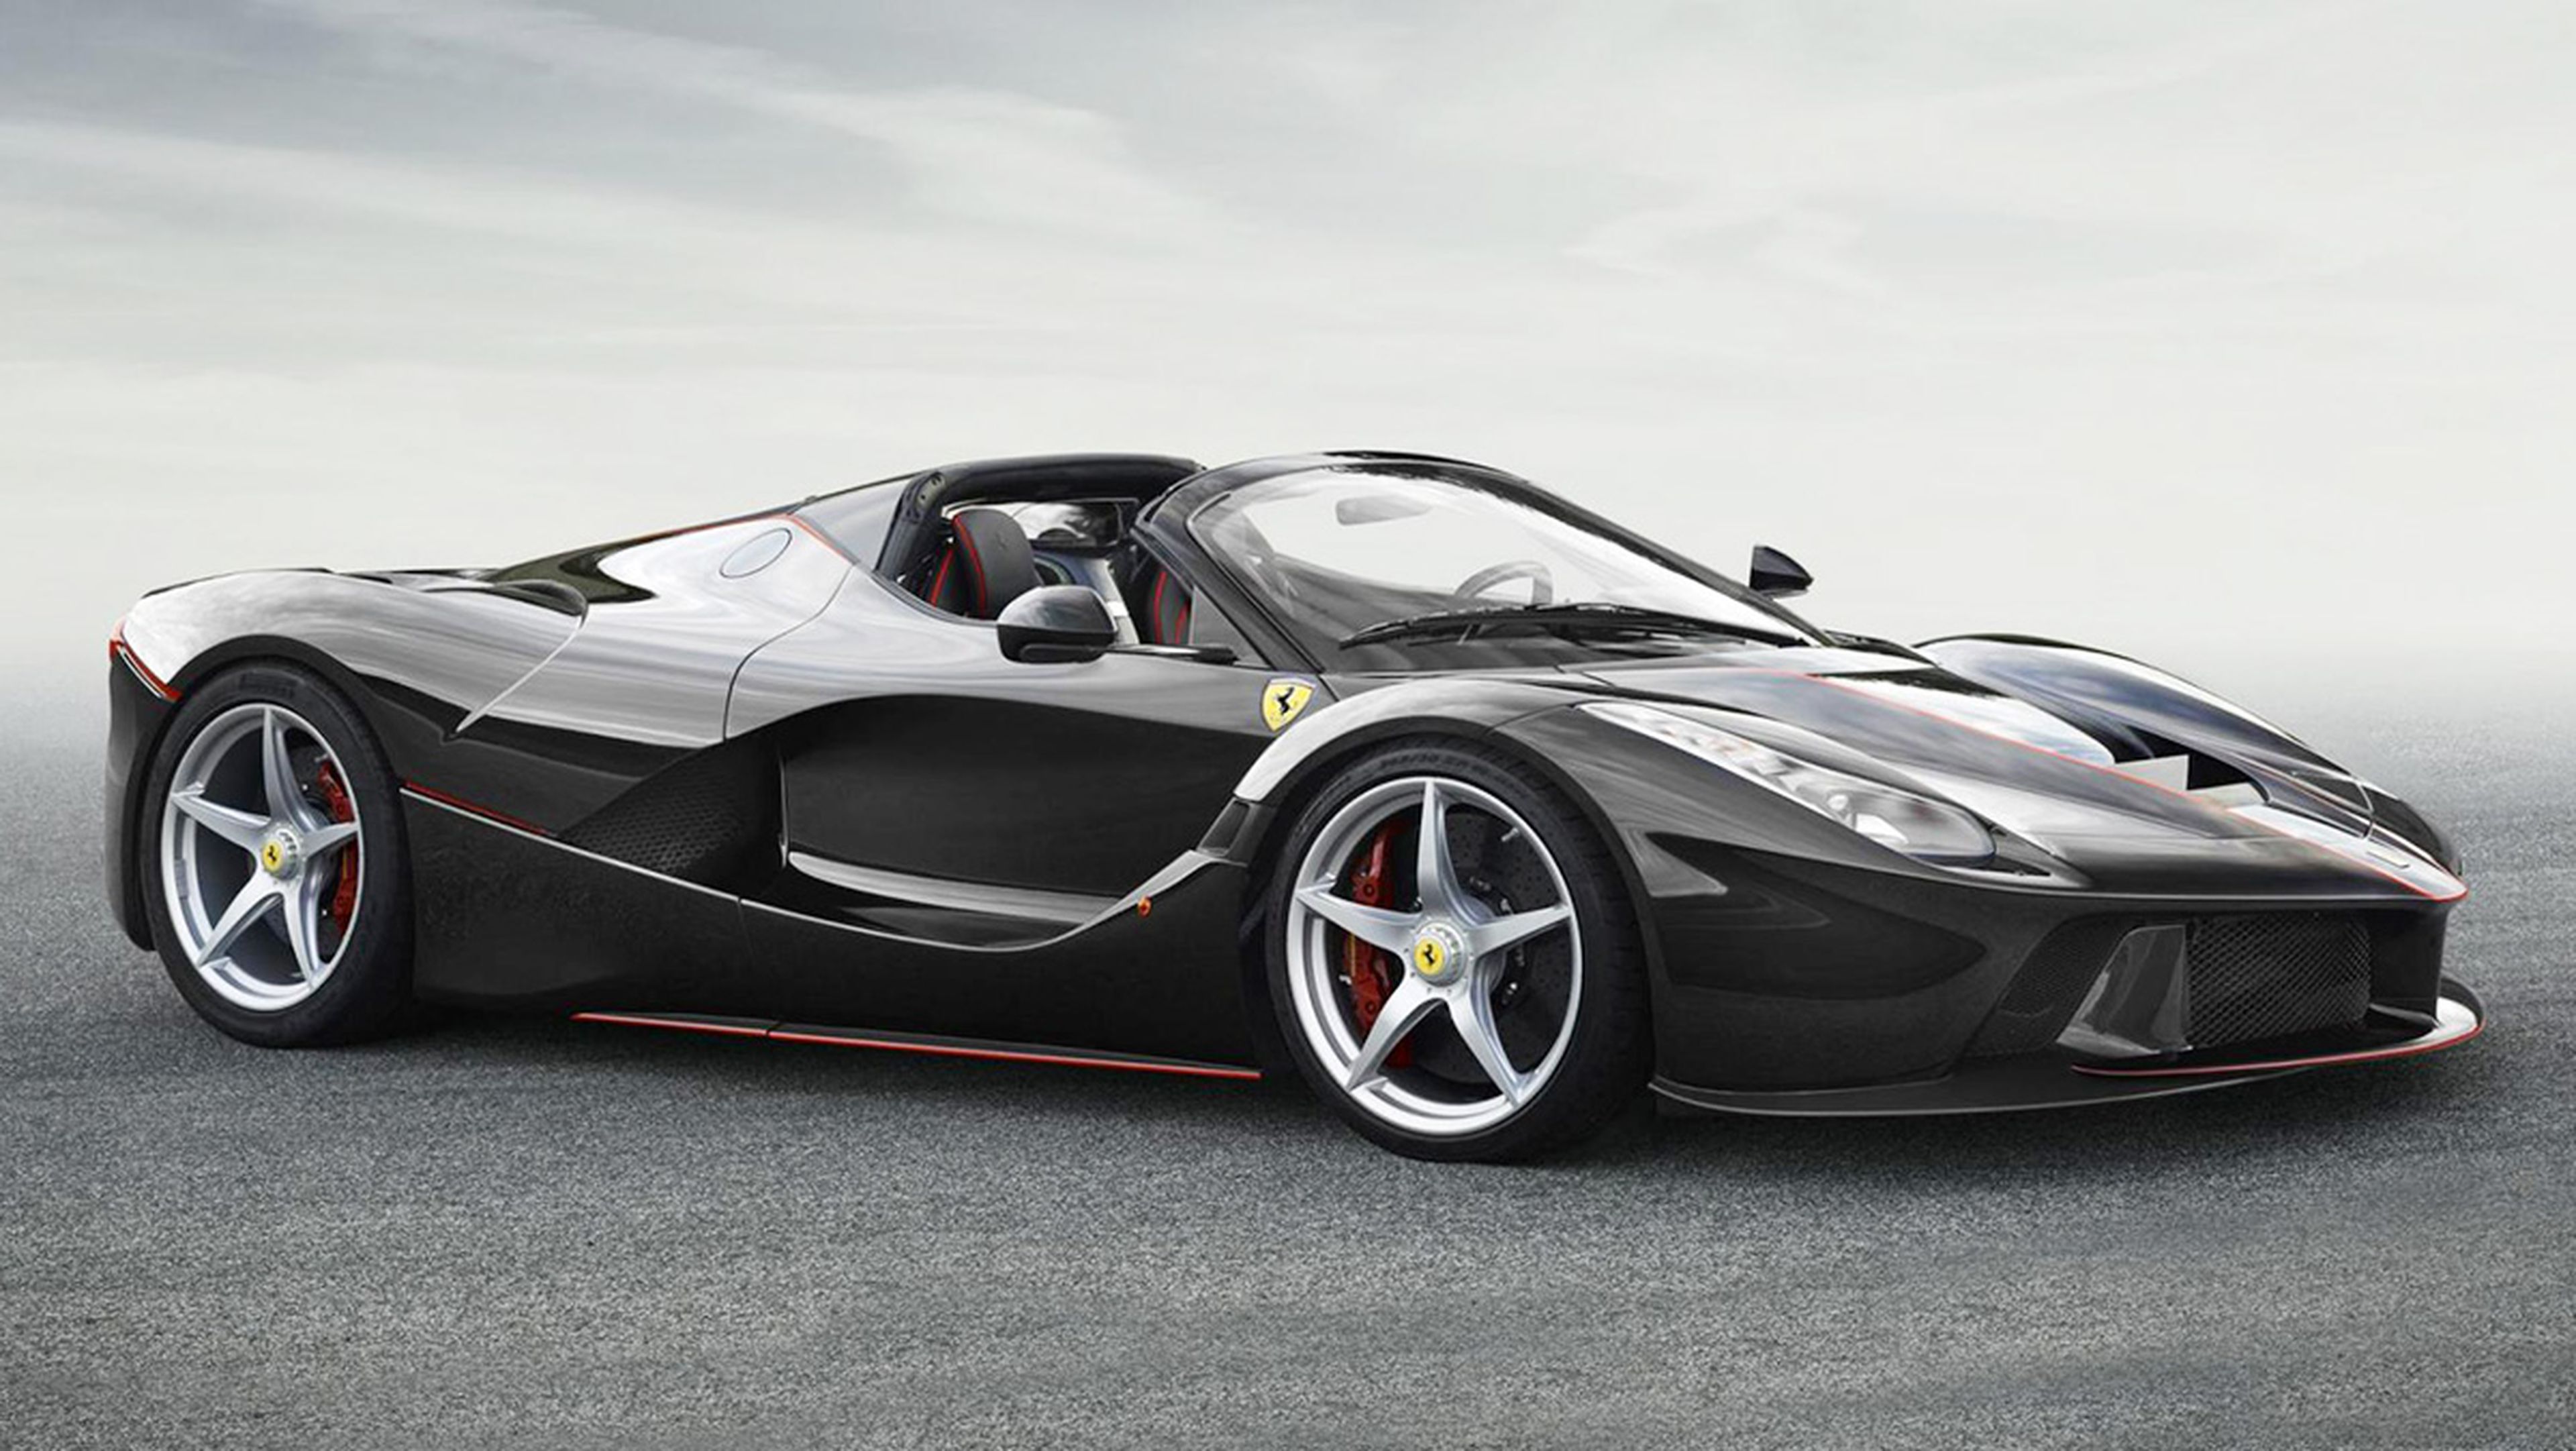 Los coches más rápidos de 2016 - Ferrari LaFerrari Aperta - 963 CV, 350 km/h